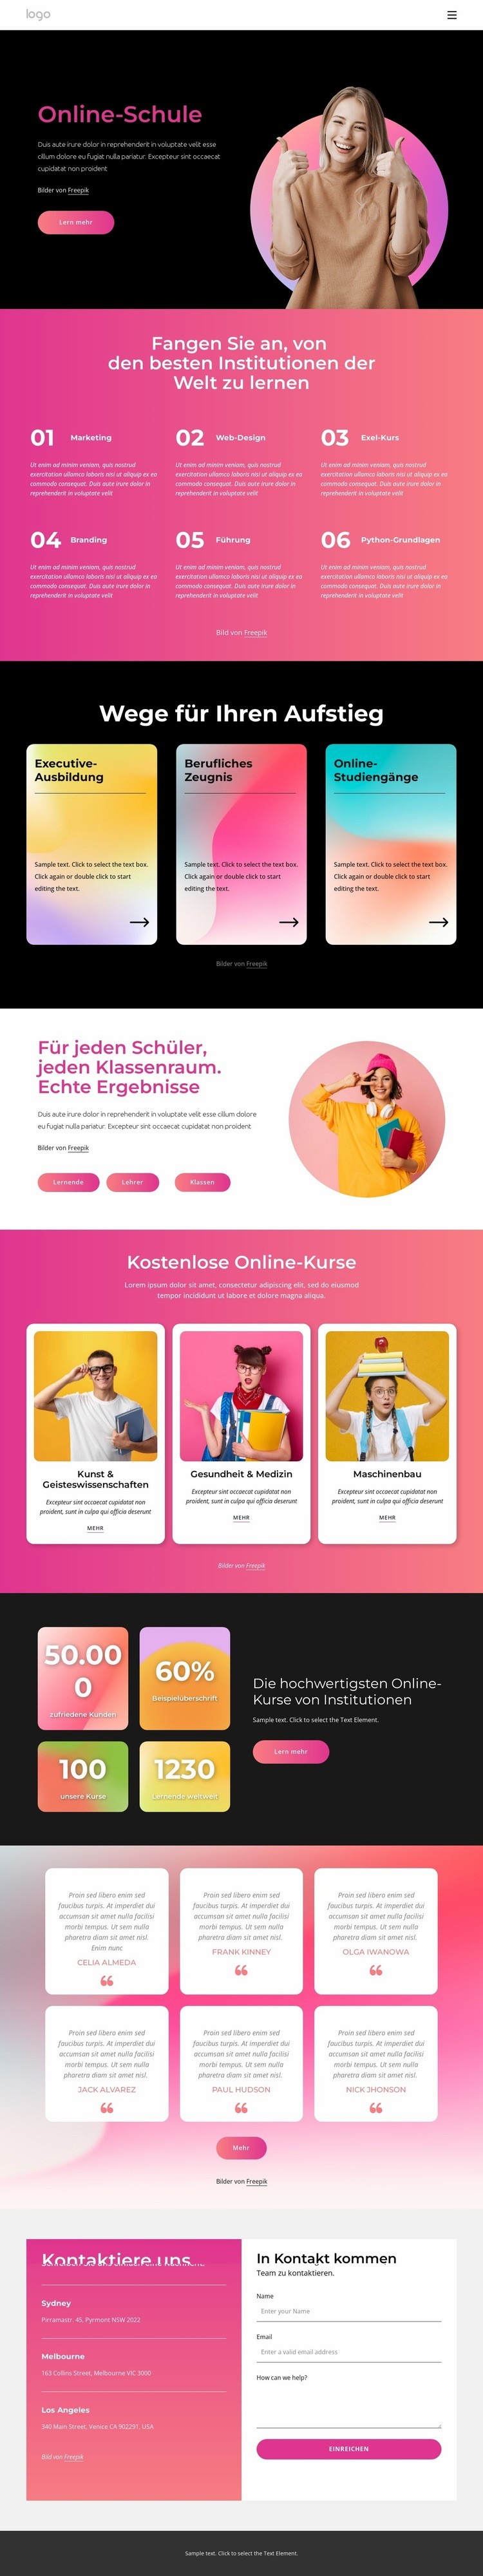 Online-Schule Website design